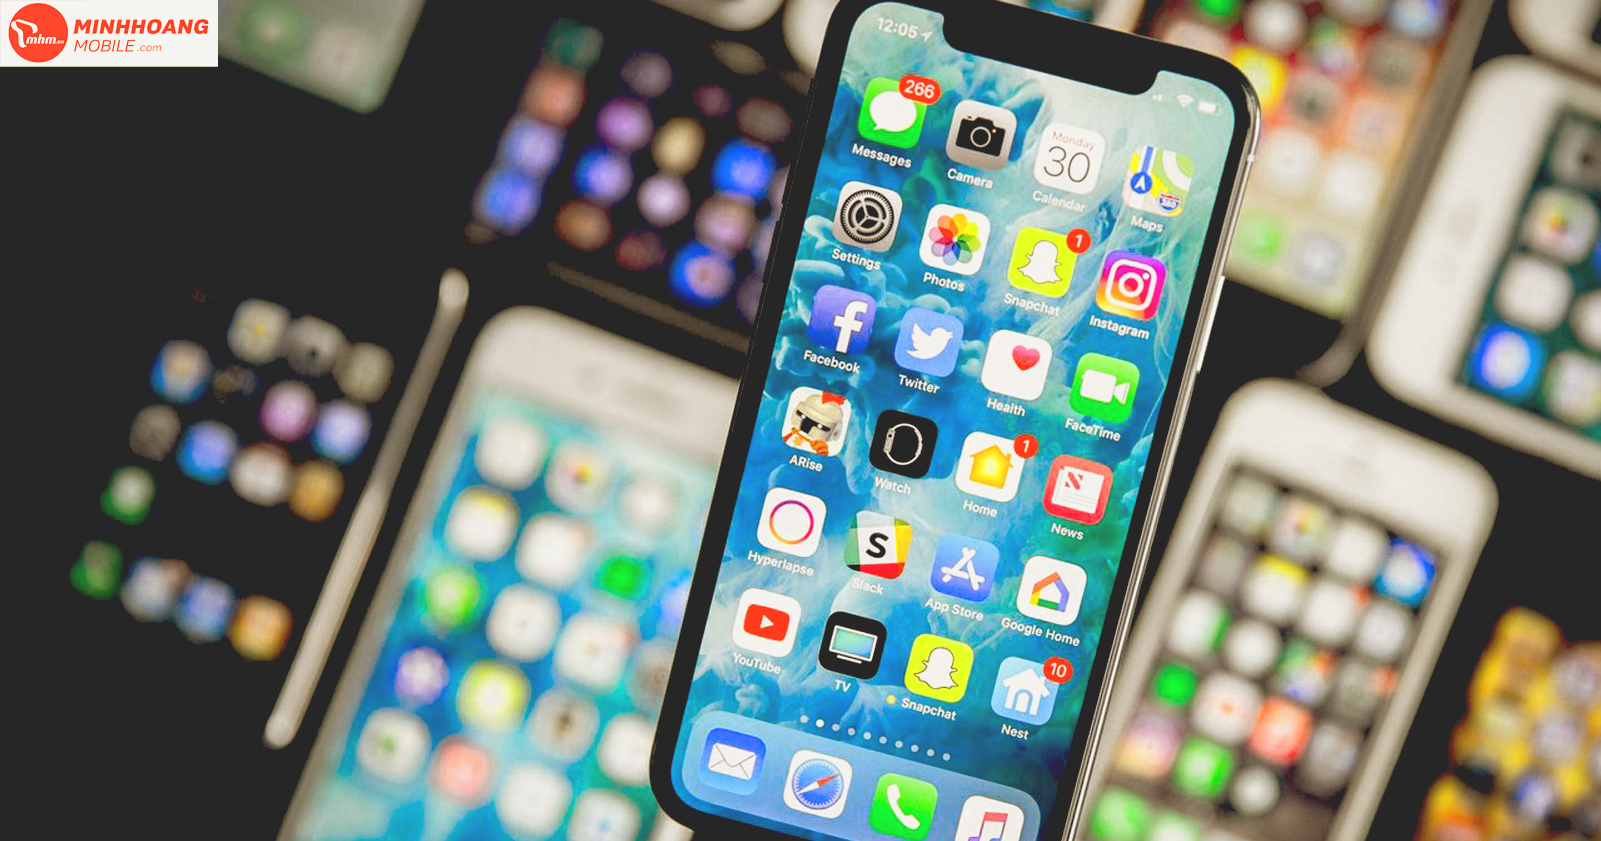 Những mẫu iPhone đáng sở hữu tại Minh Hoàng Mobile, giá rẻ và hỗ trợ trả góp 0%